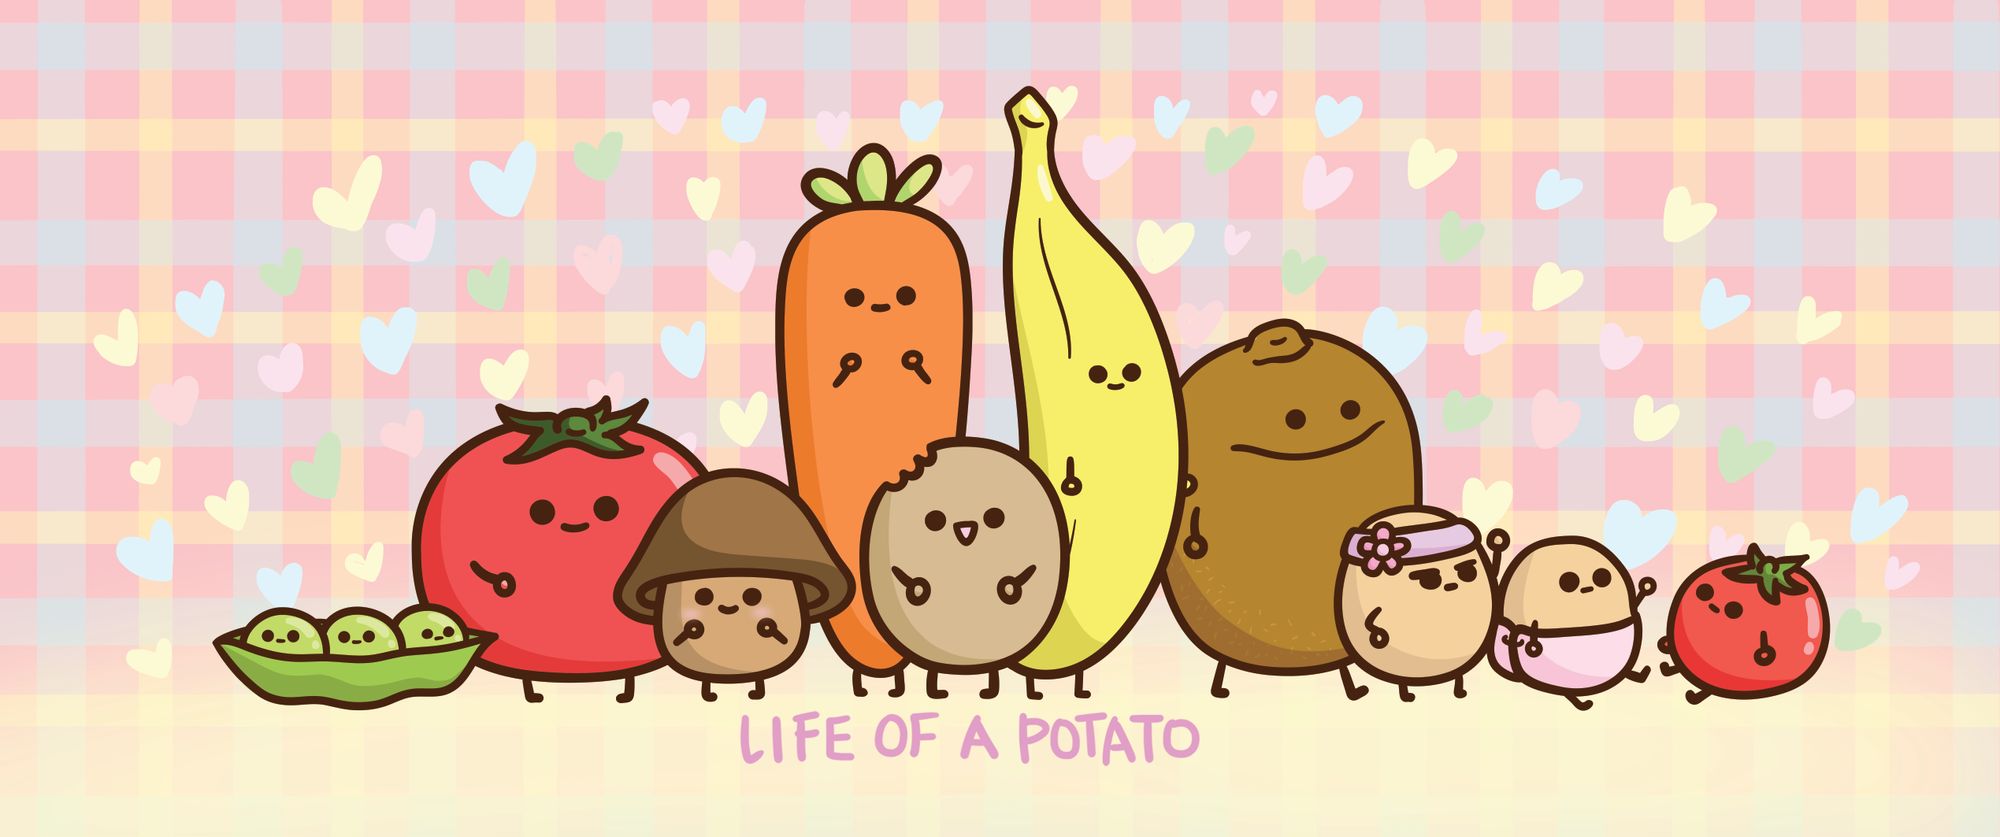 Life of a Potato